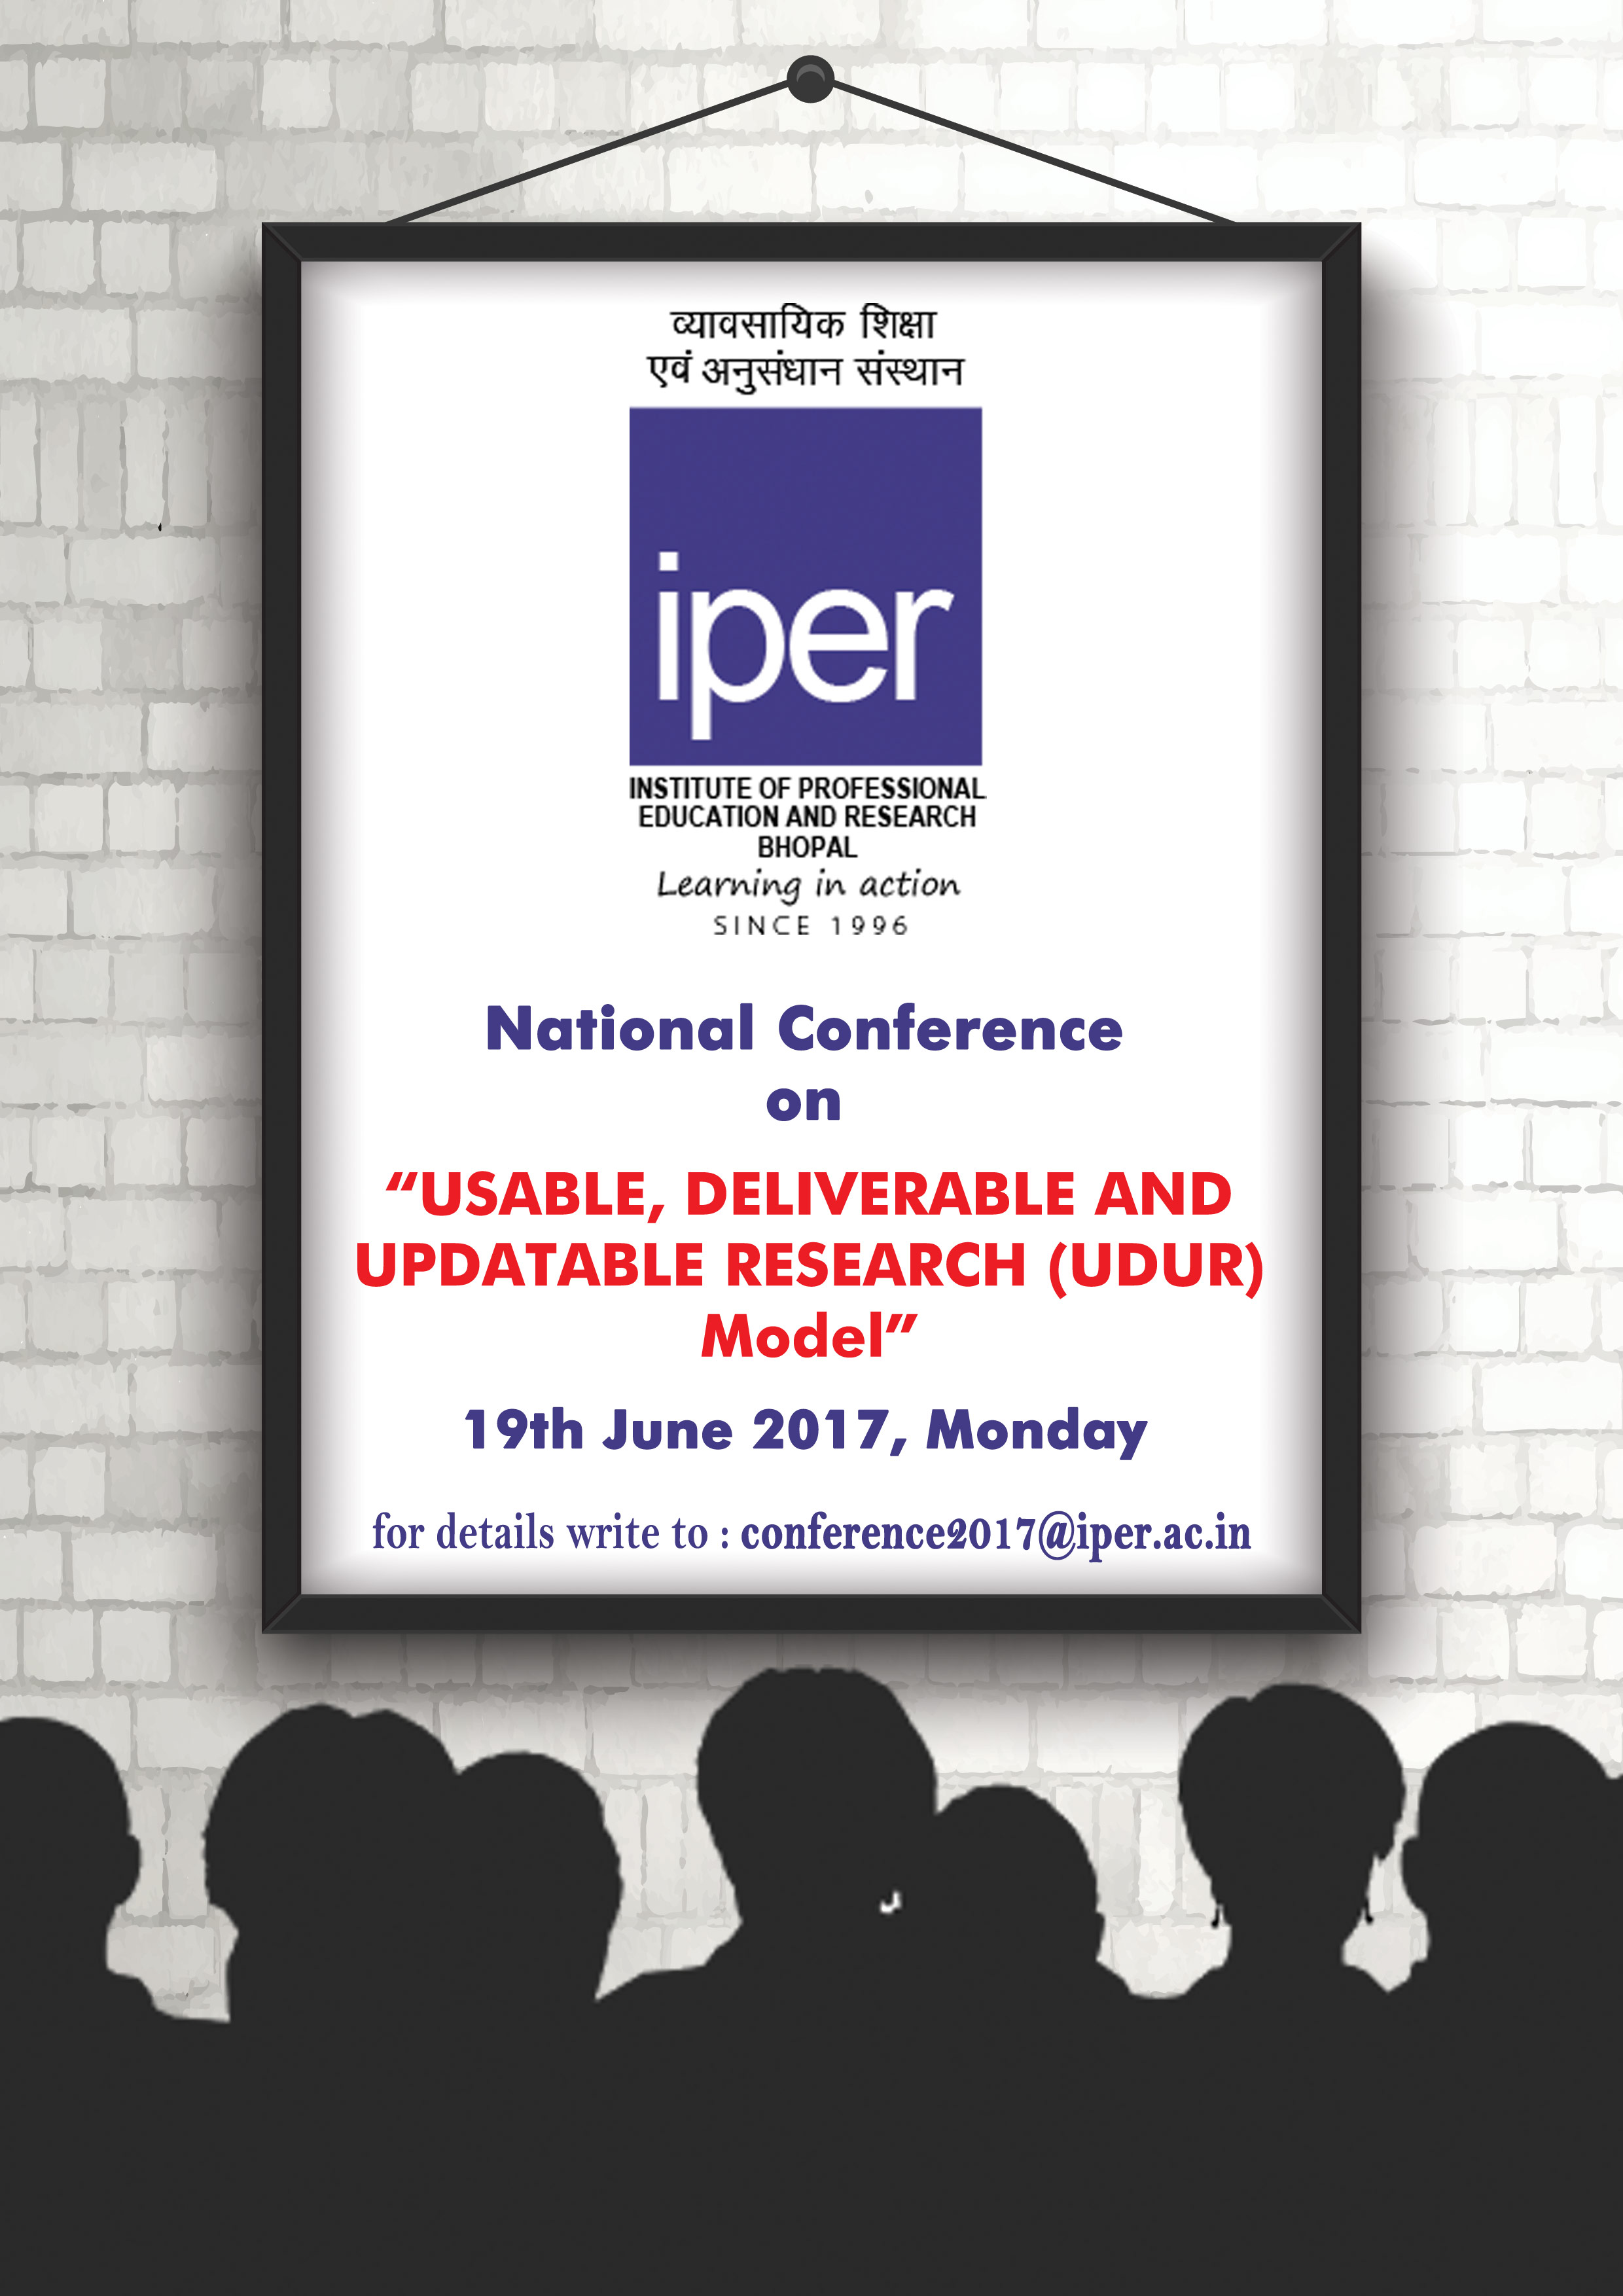 National Conference on UDUR Model at IPER, Bhopal, Madhya Pradesh, Bhopal, Madhya Pradesh, India